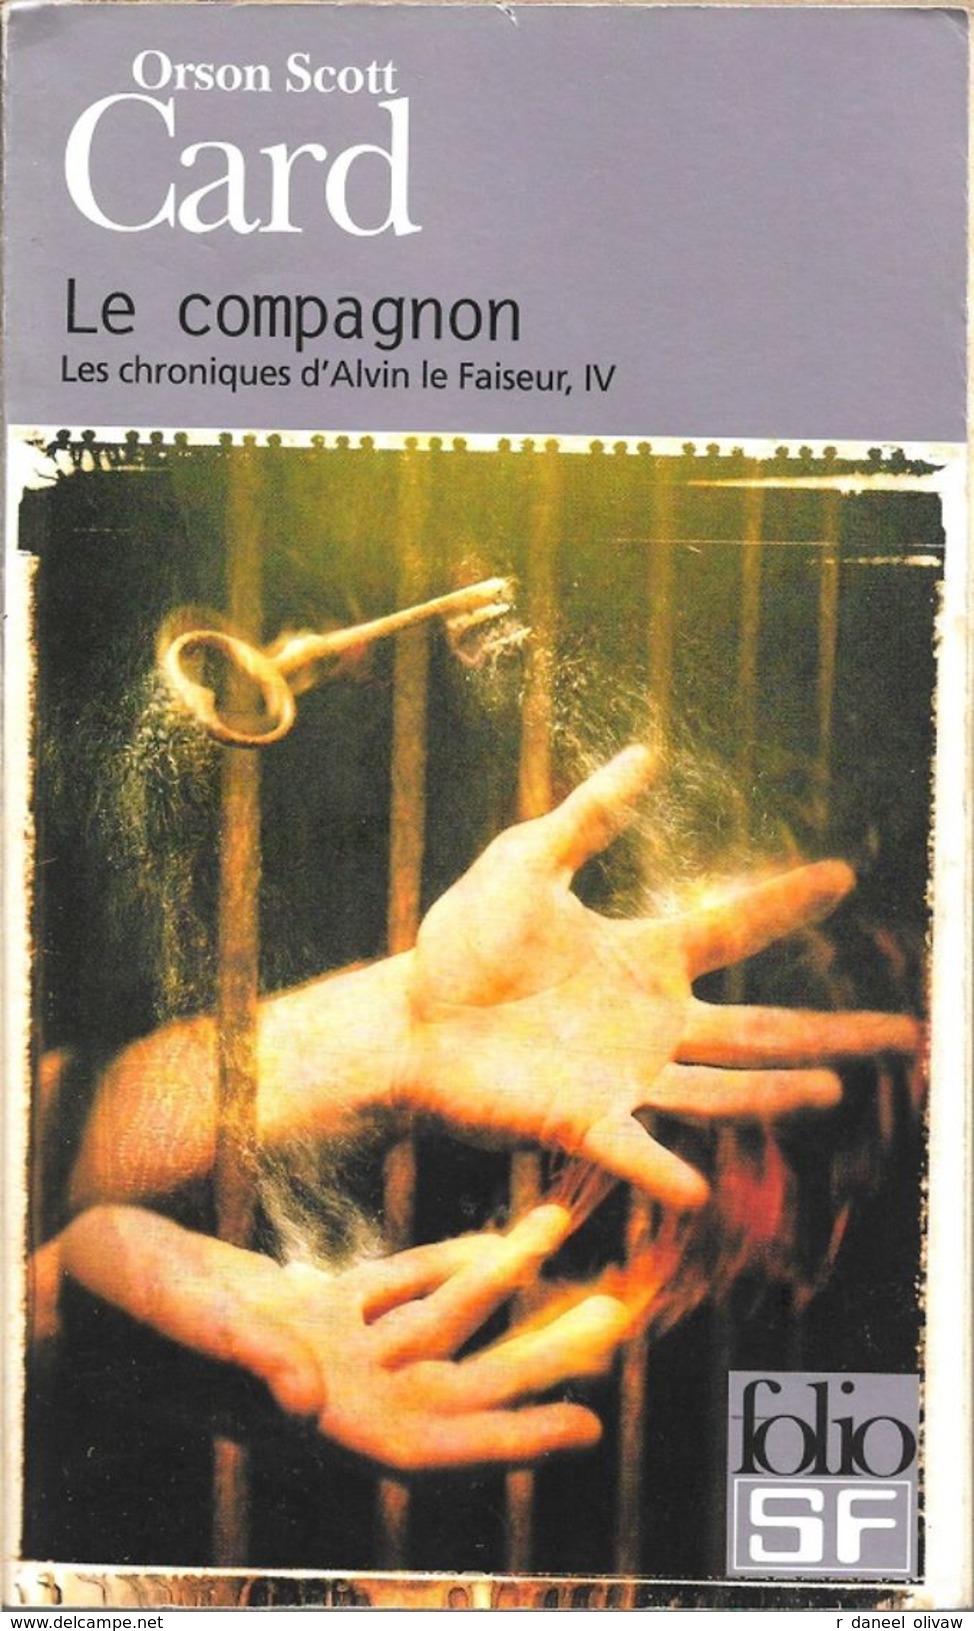 Folio SF 141 - CARD, Orson Scott - Le Compagnon (TBE) - Folio SF